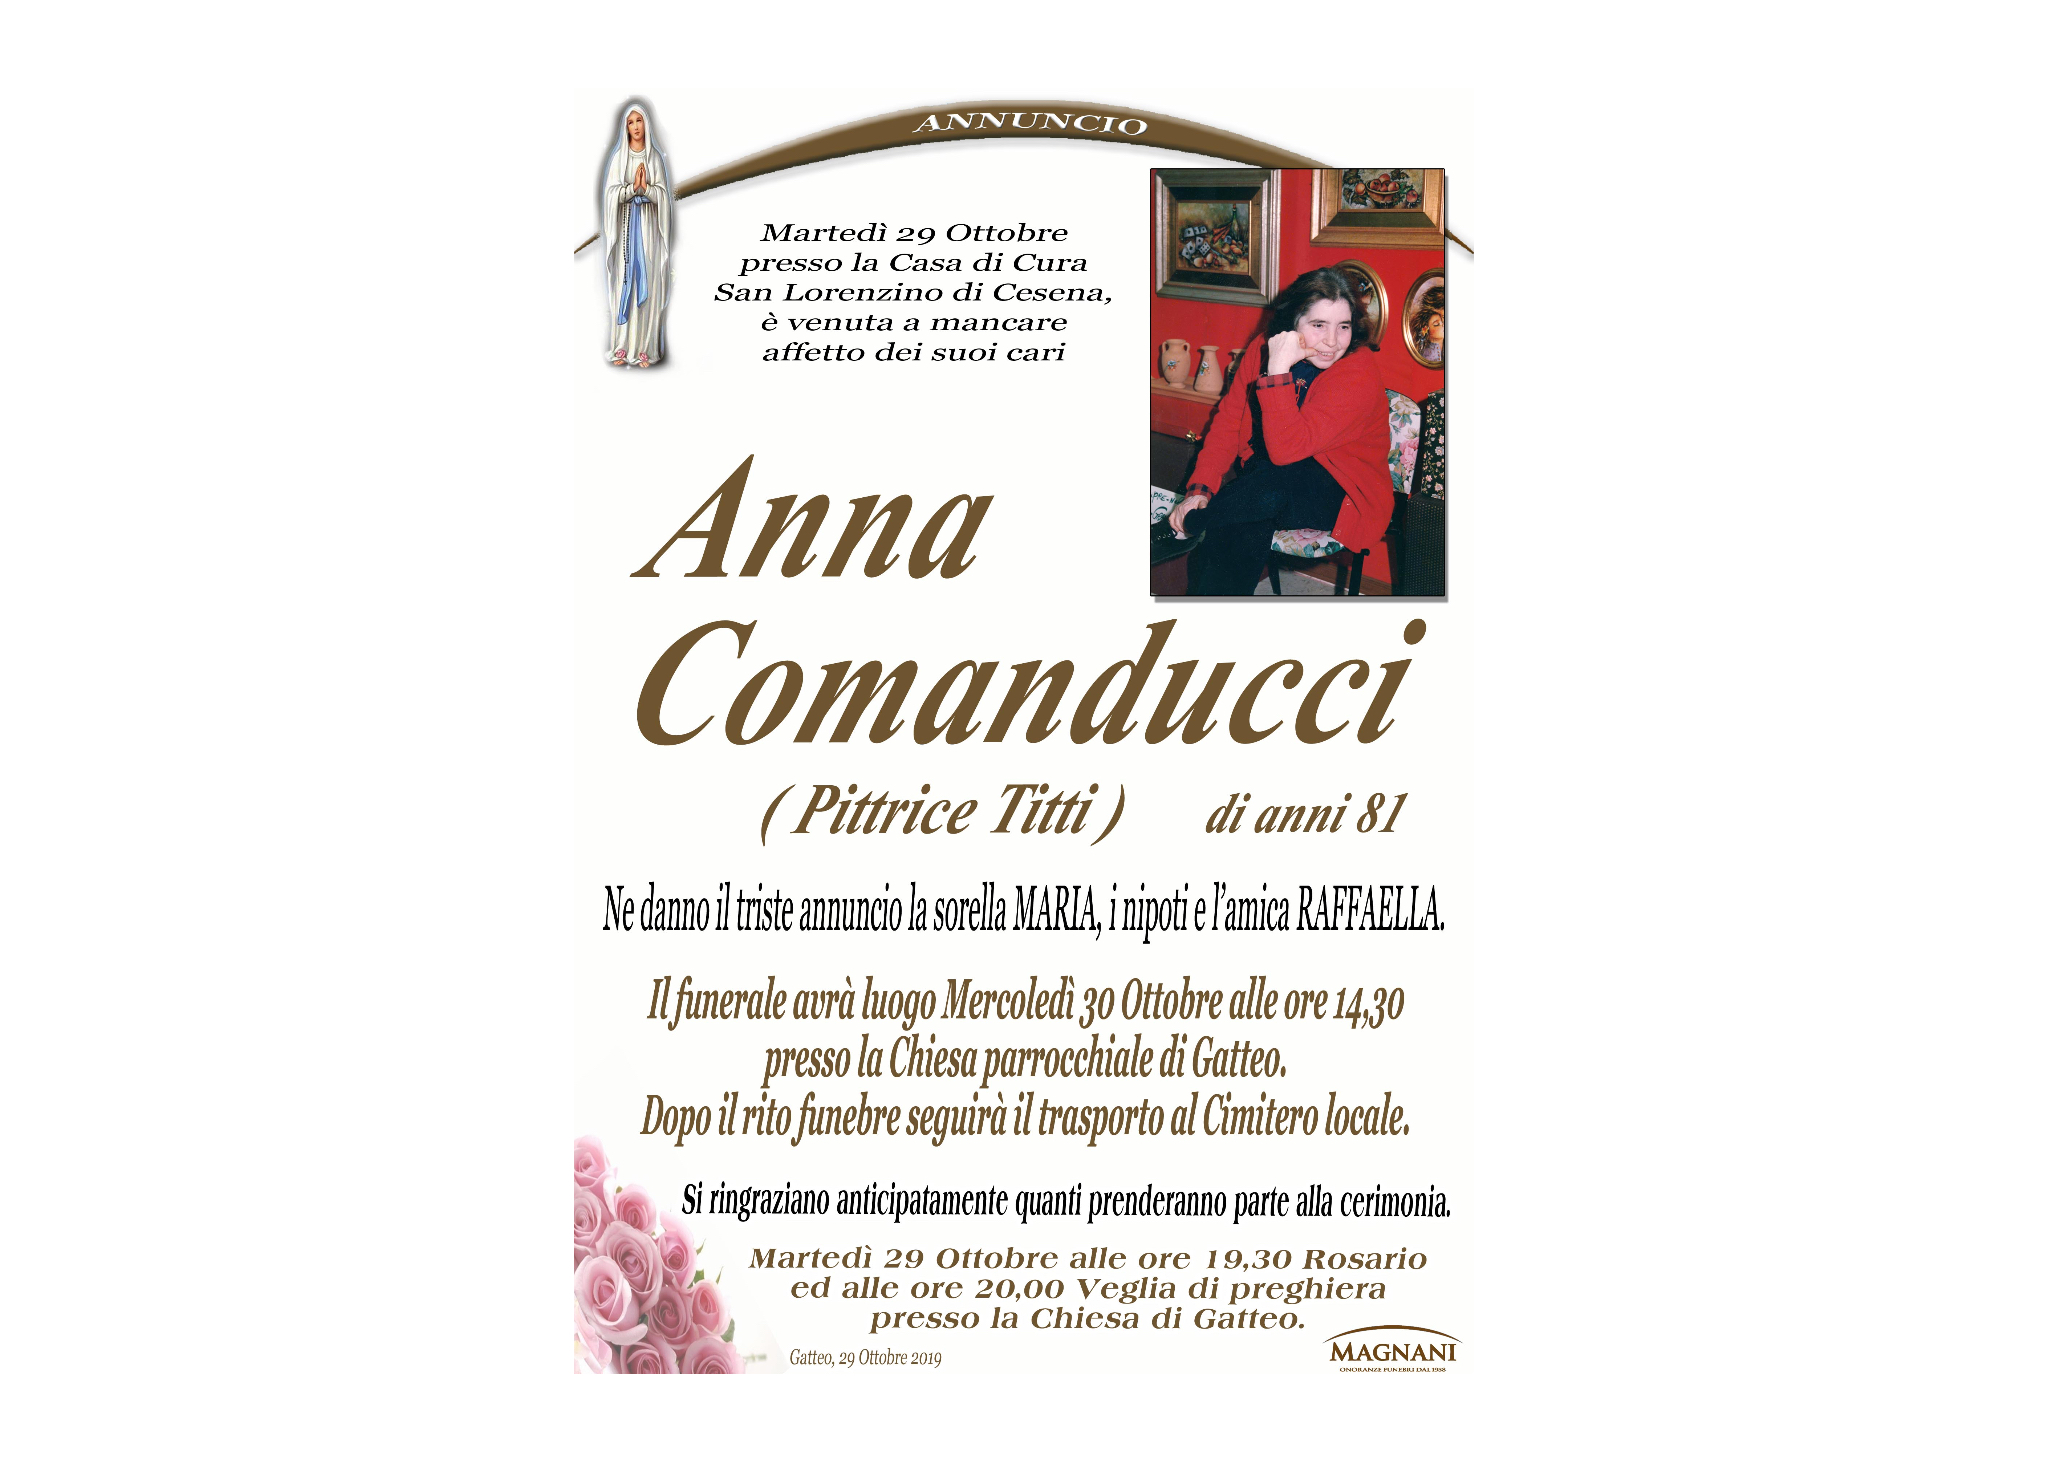 Anna Comanducci